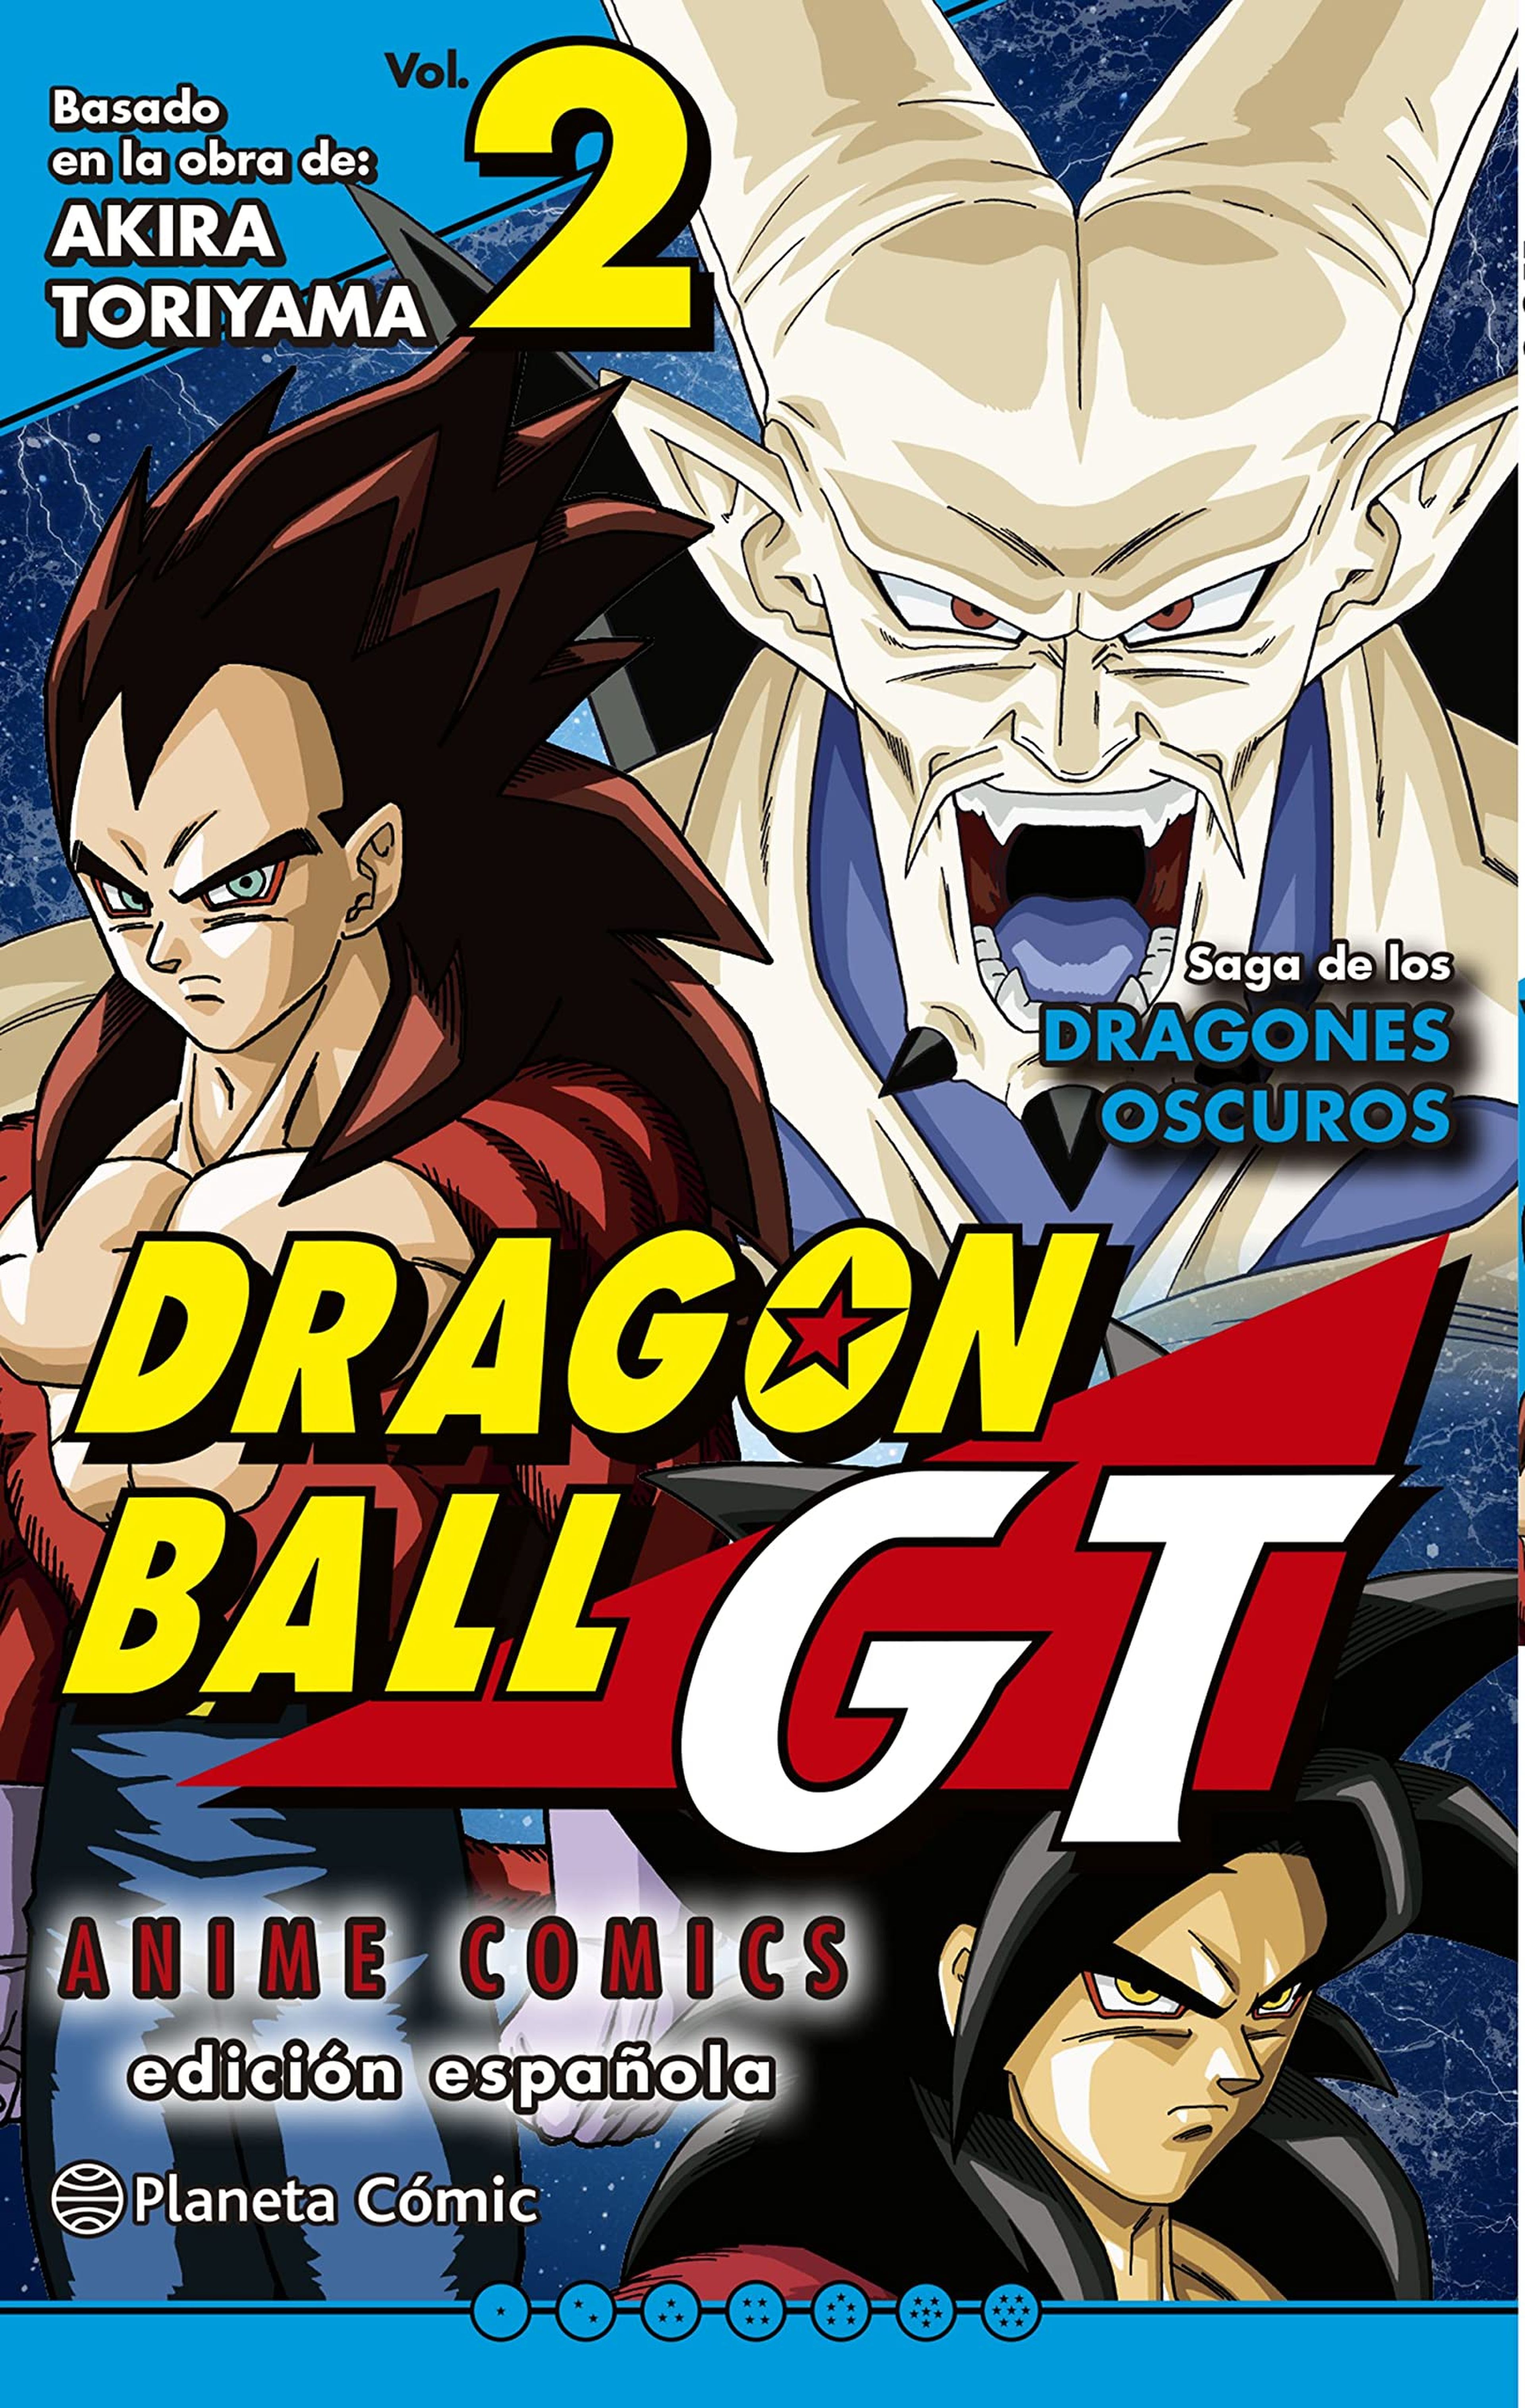 Dragon Ball GT - Desvelada la fecha de lanzamiento y portada del tomo 2 de los Anime Cómics